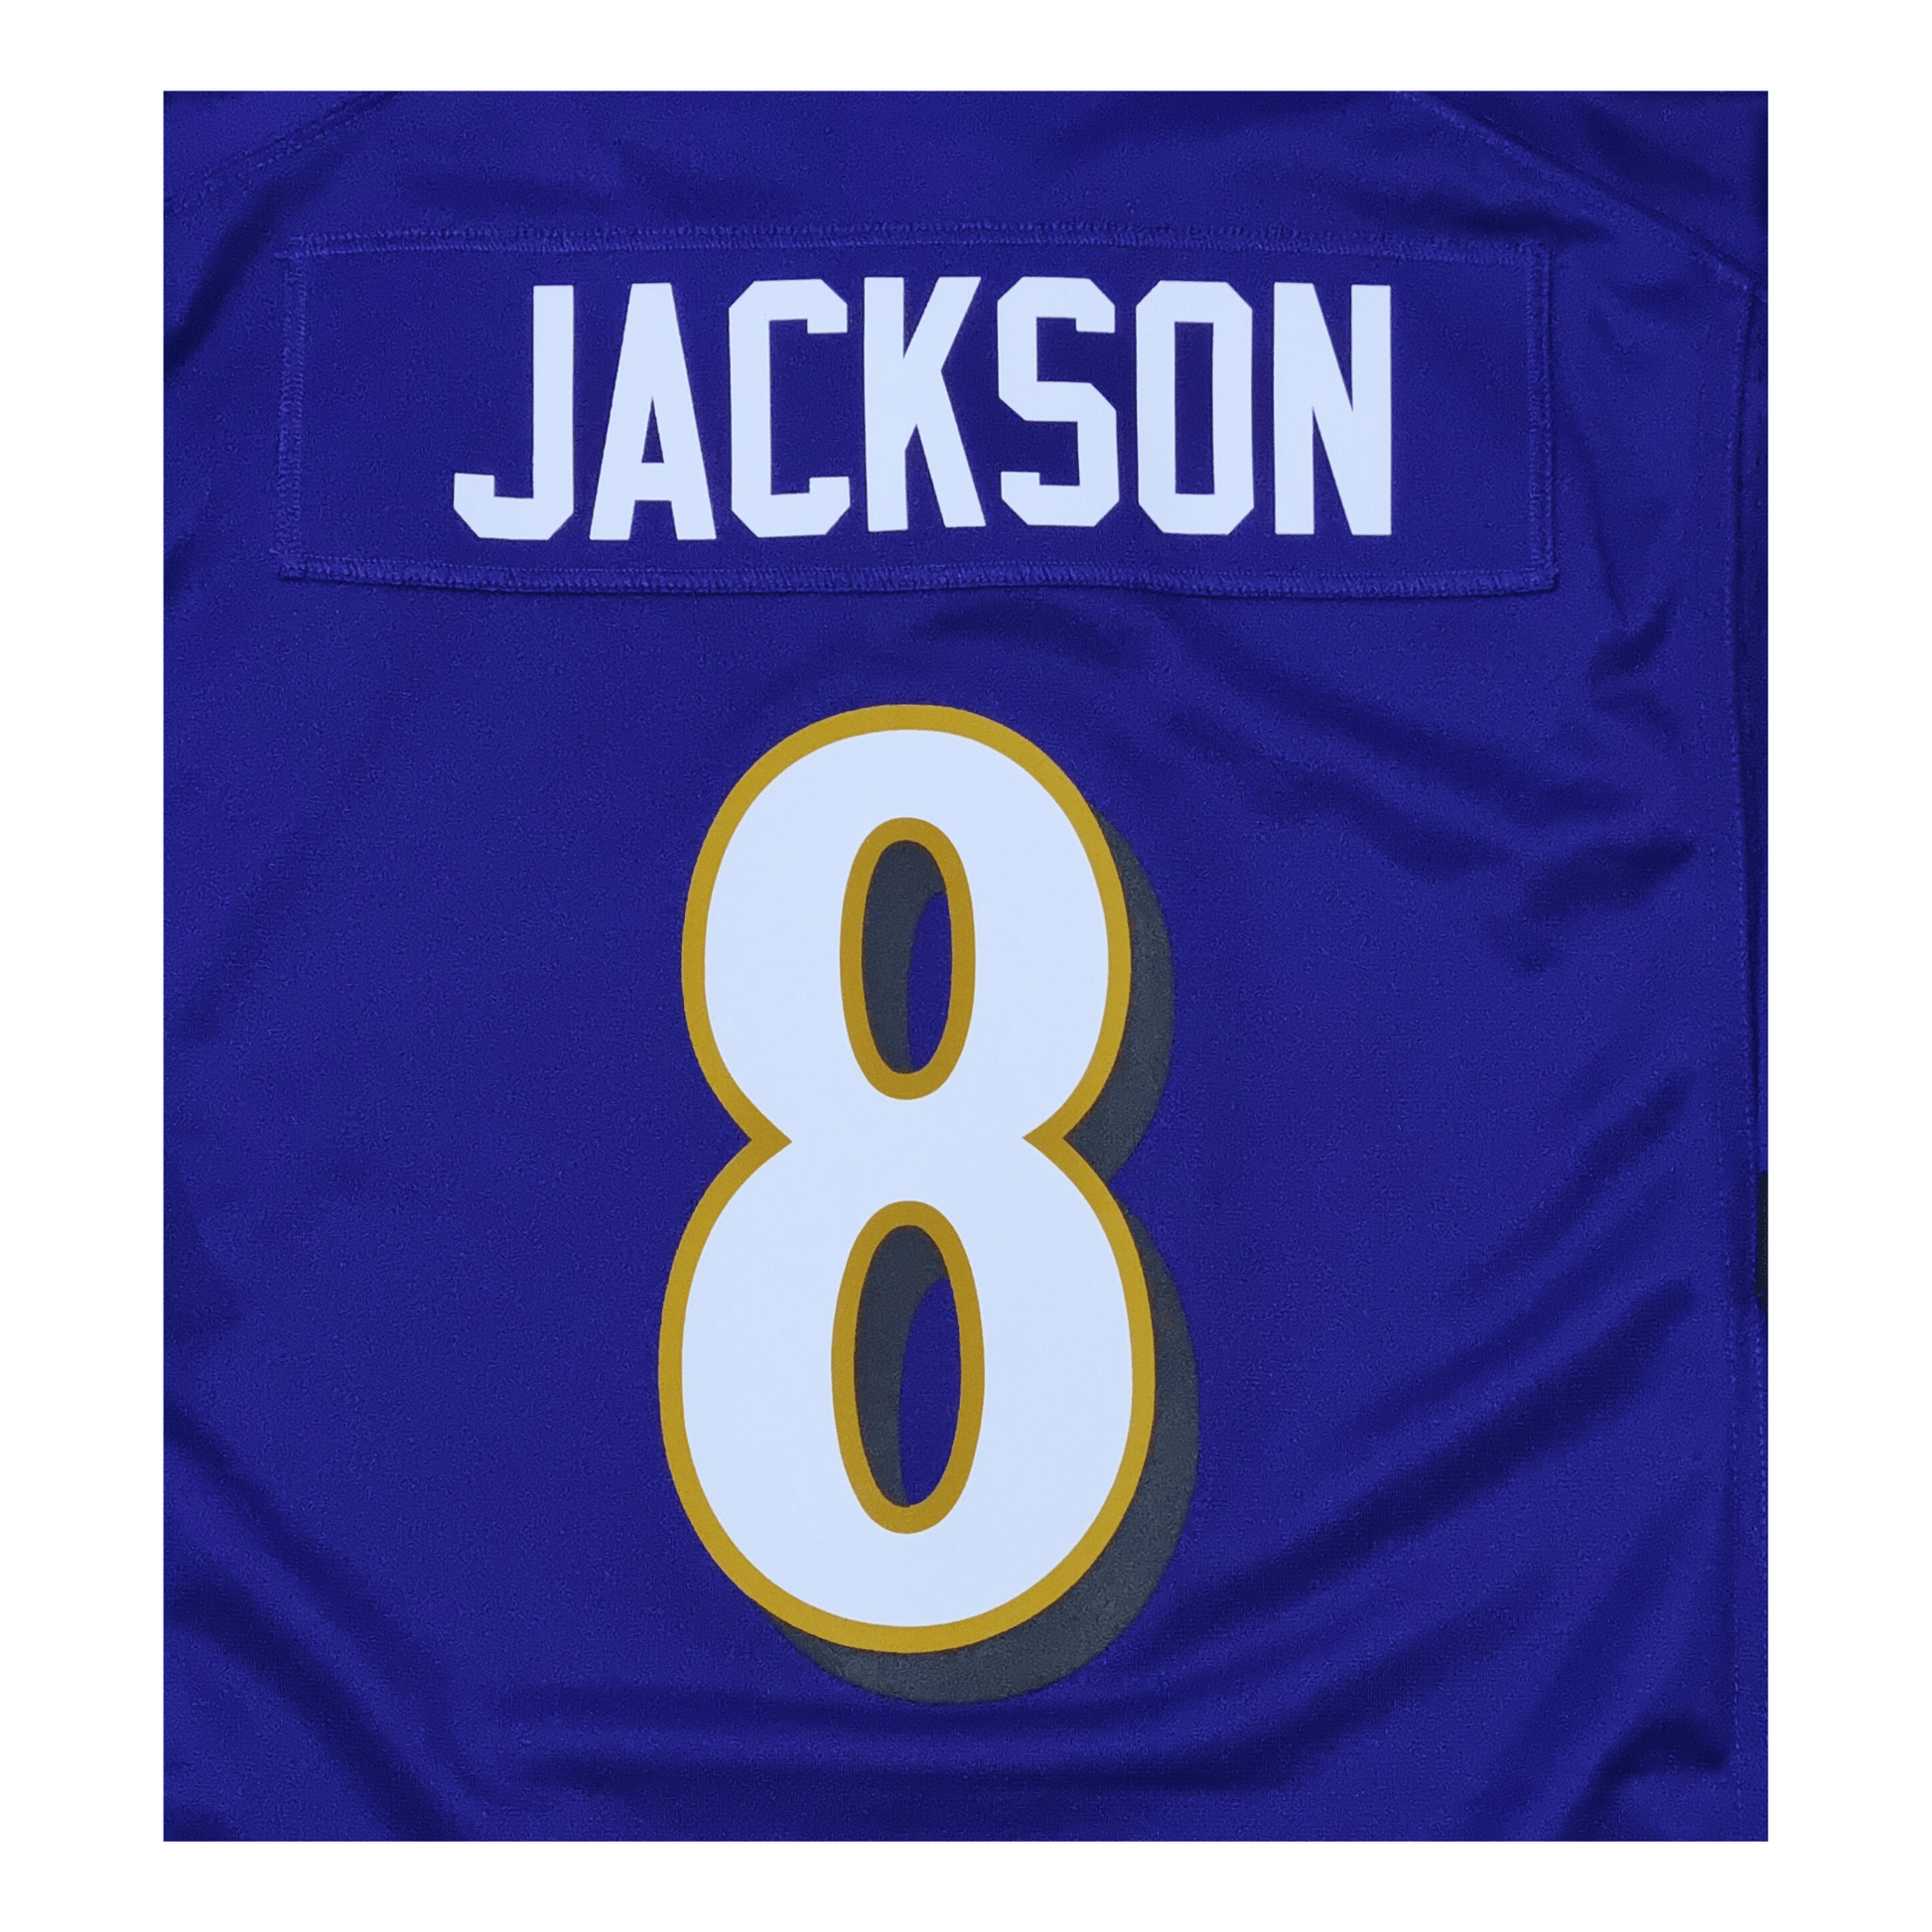 Baltimore Ravens Jersey - Lamar Jackson Jr. - kit number